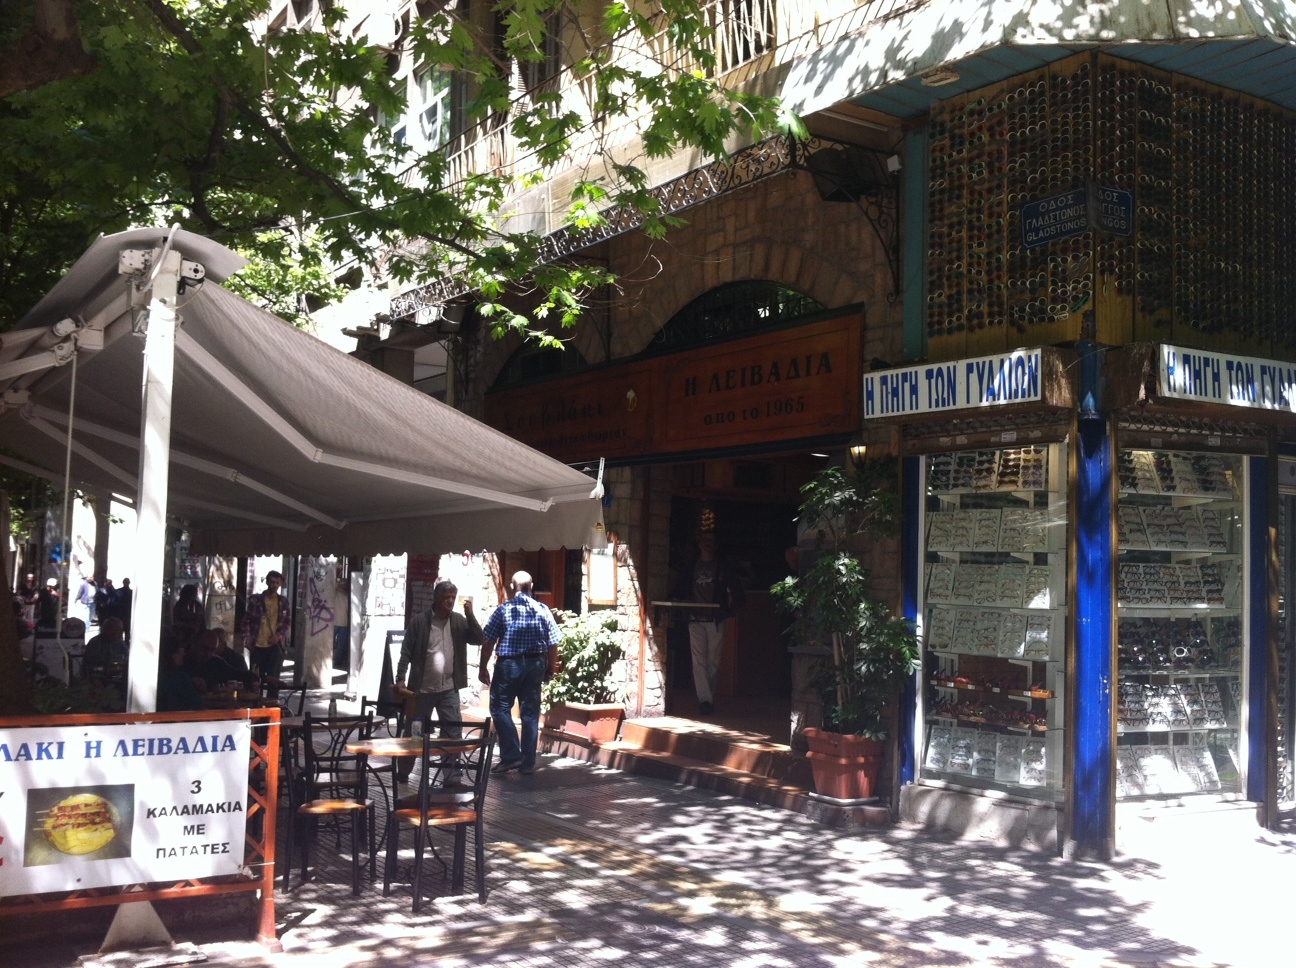 Περίπατος στην Αθήνα: Σουβλάκια Λειβαδιάς στην Κάνιγγος